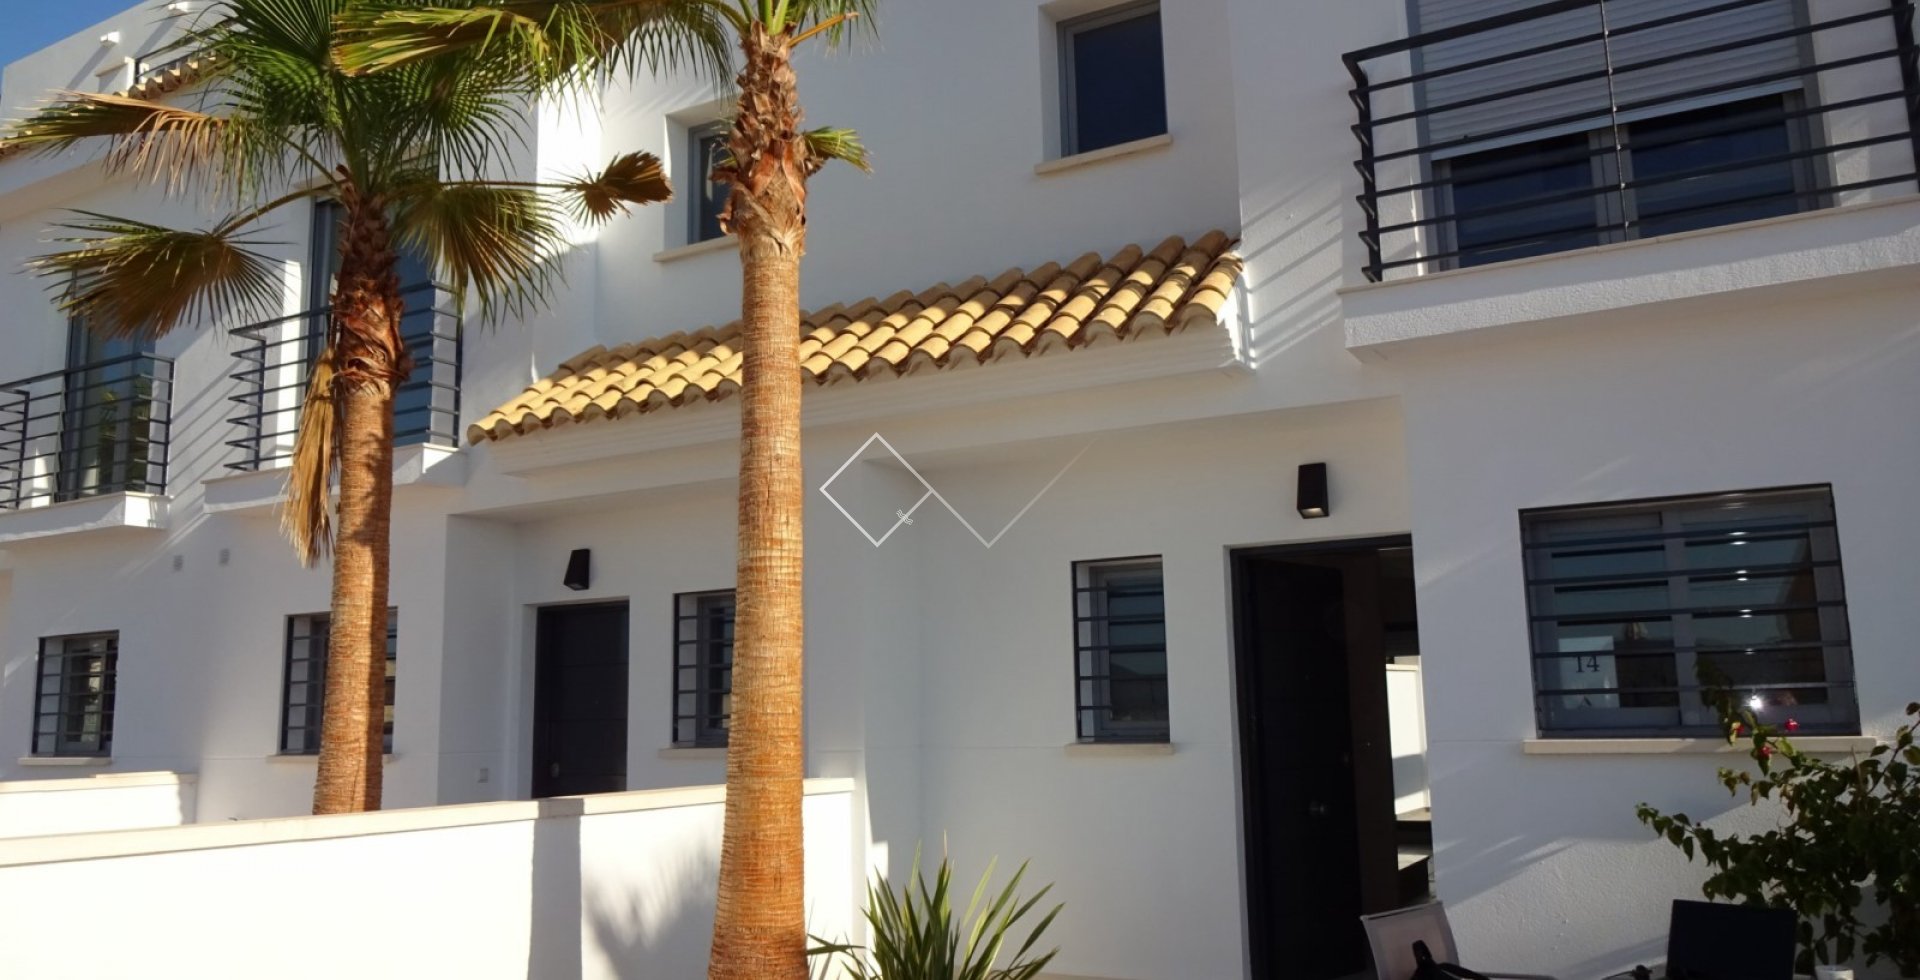 Casa con palmera - Moderna casa adosada en venta con piscina comunitaria y garaje en Jesús Pobre